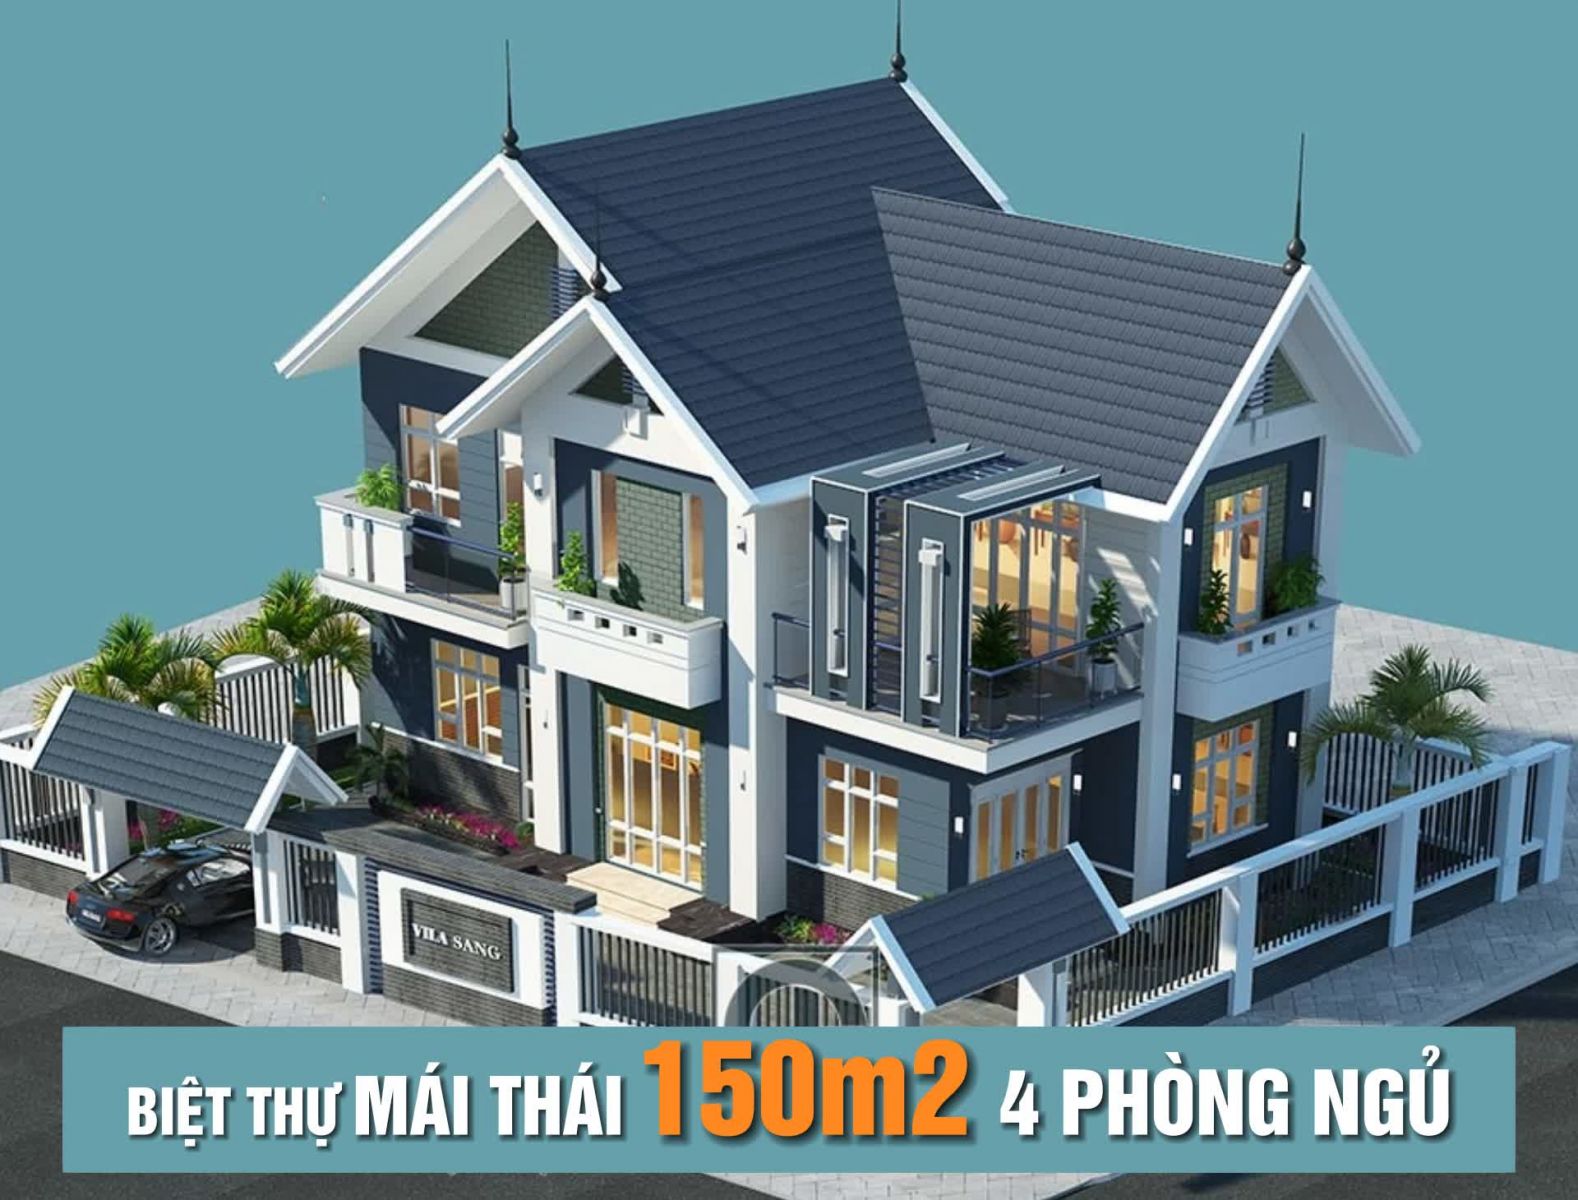 Nhà 1 tầng 4 phòng ngủ kết hợp hệ mái Thái  BT 11034  KataHome